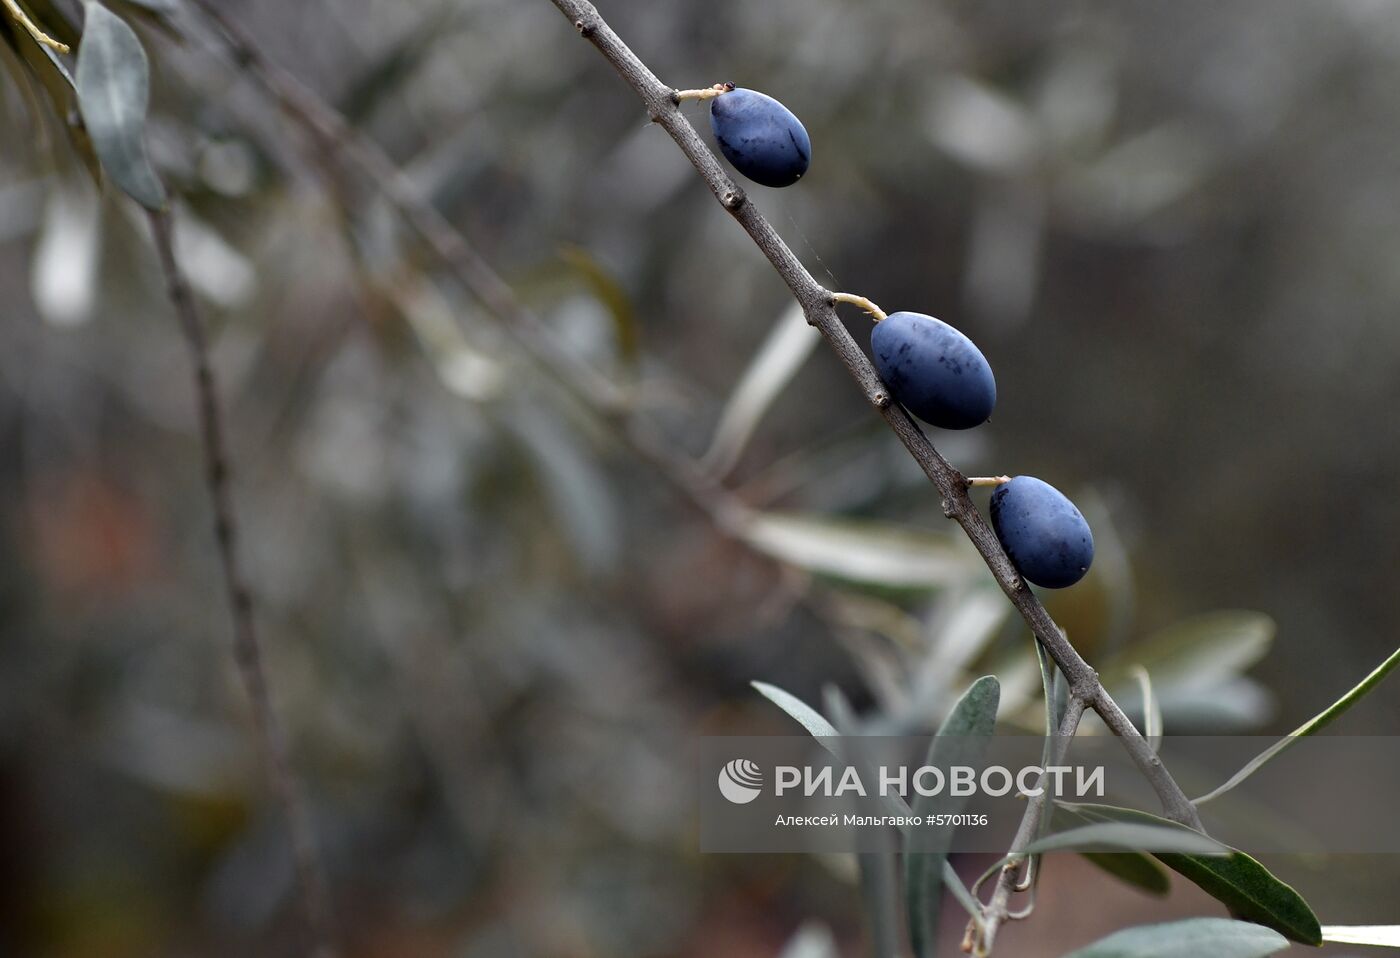 Сбор маслин в Никитском ботаническим саду